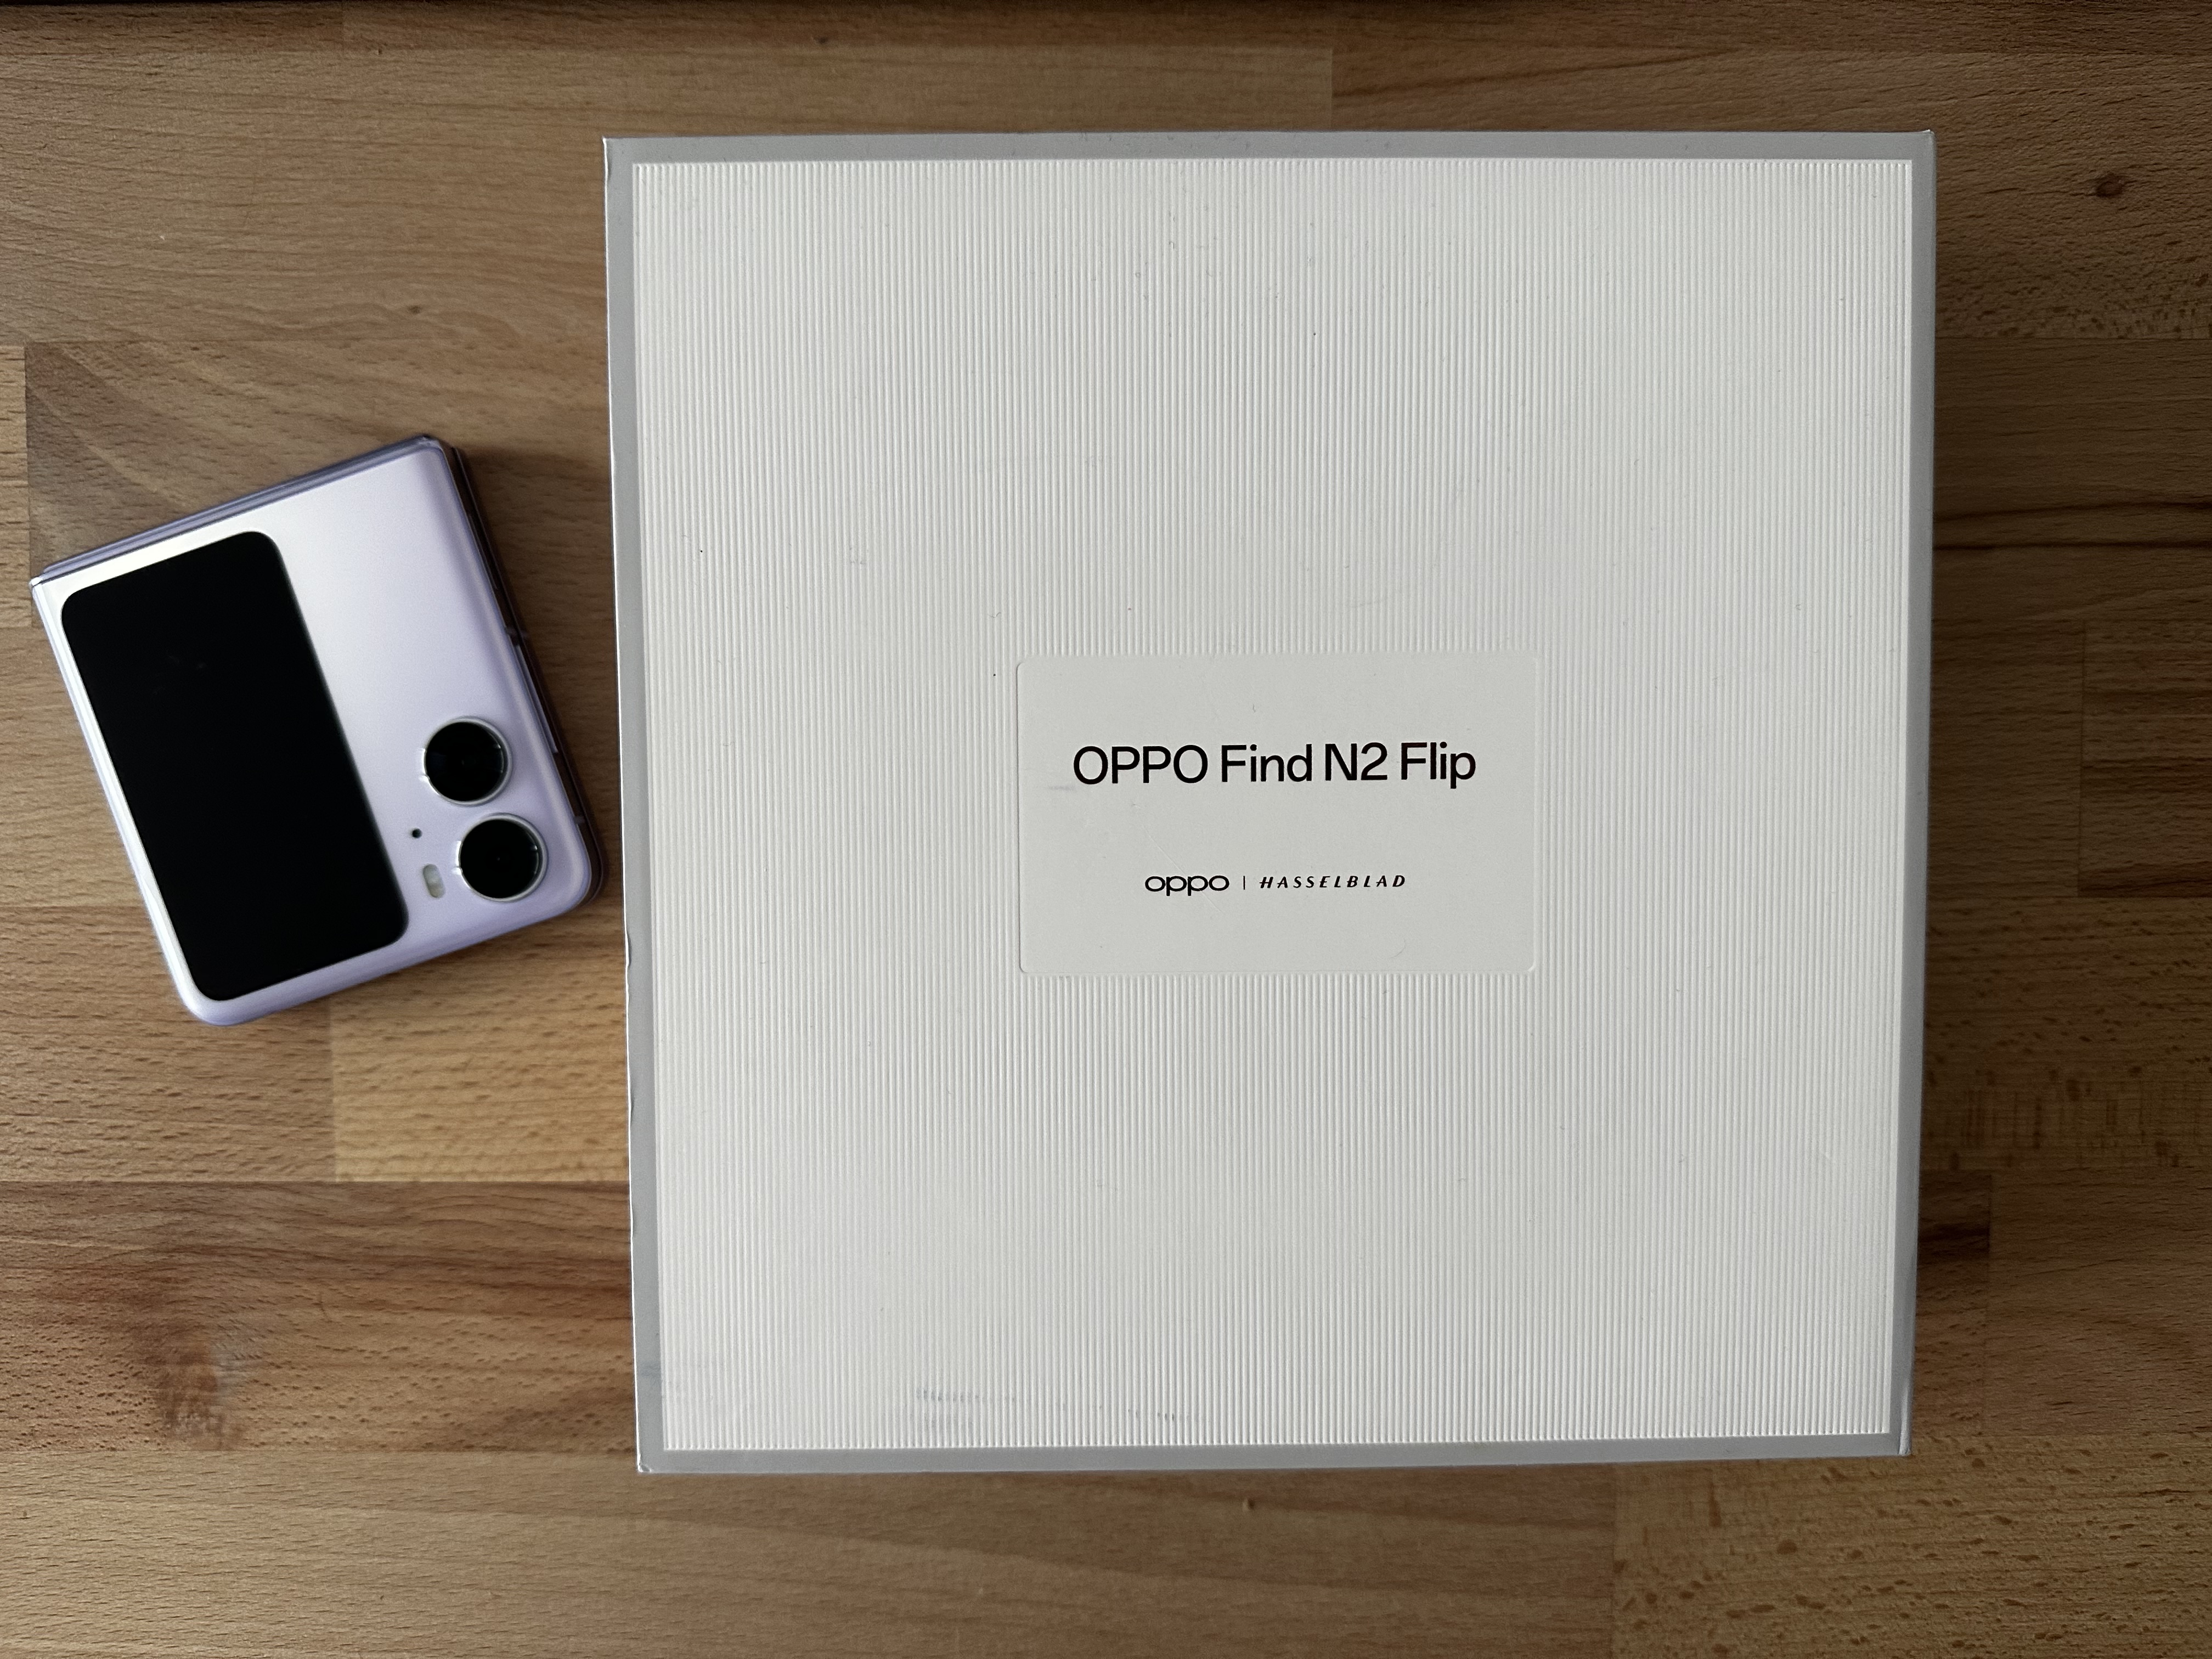 Die Verpackung vom Oppo Find N2 Flip